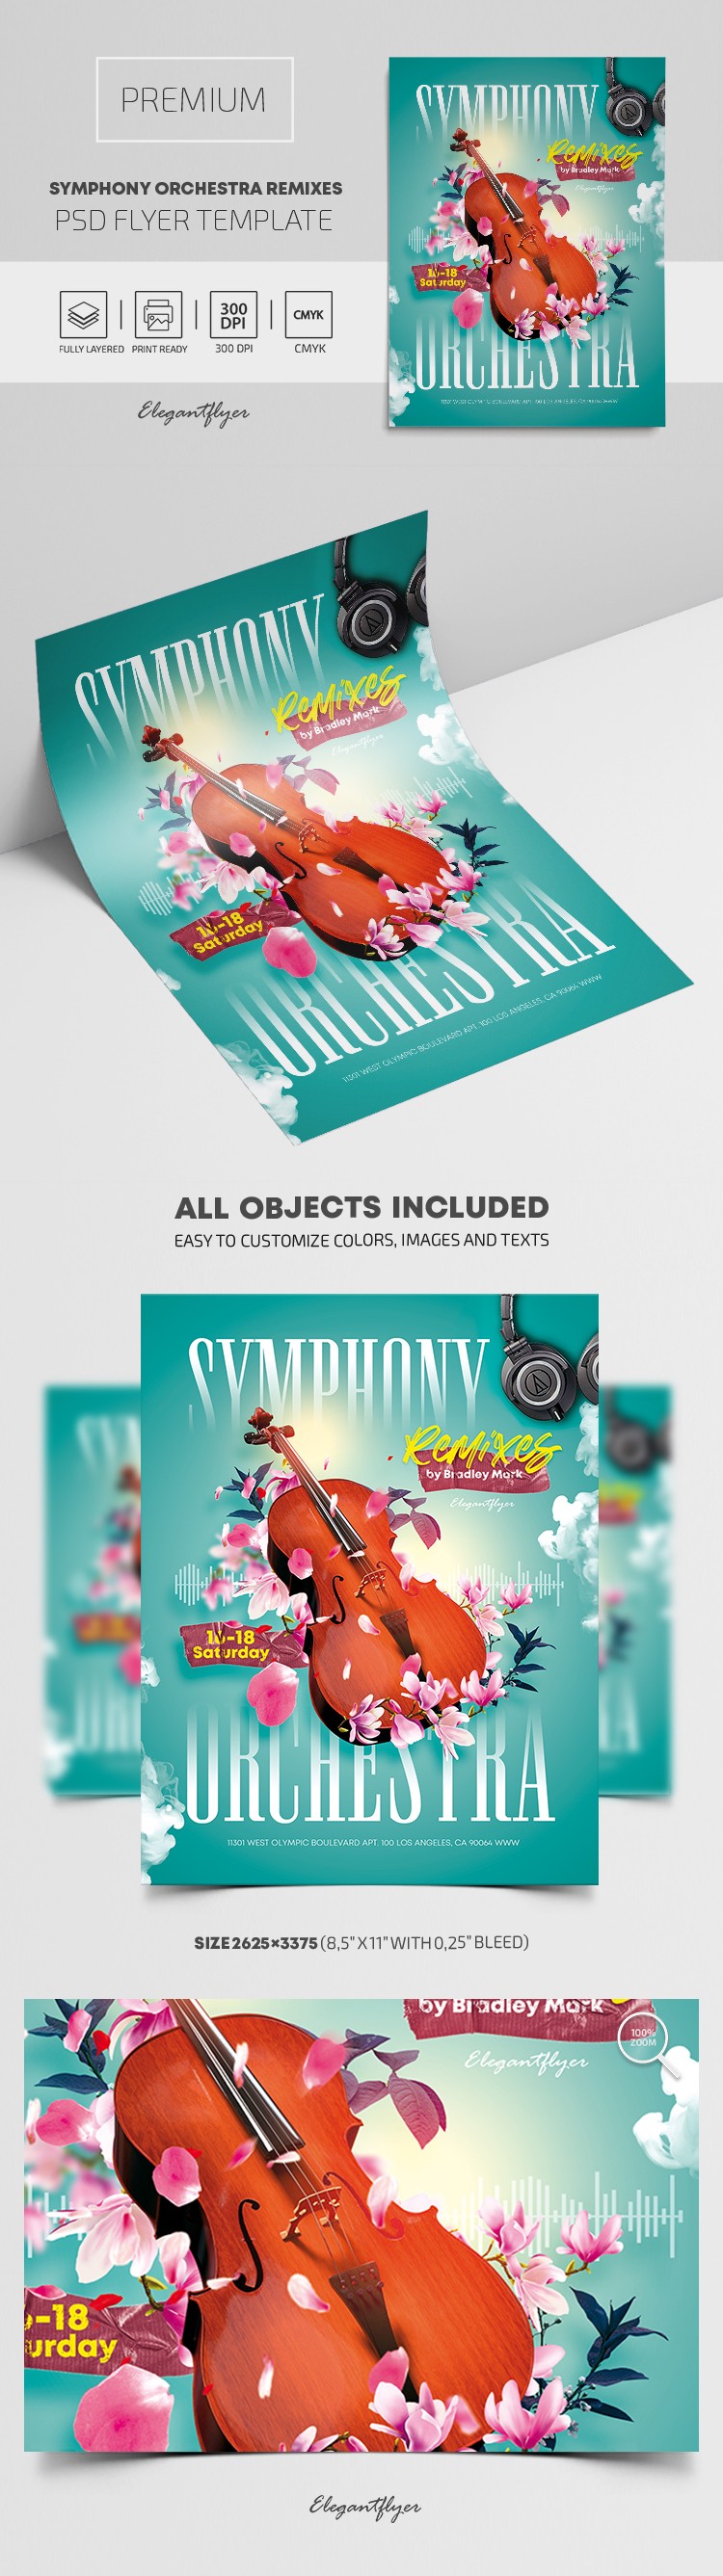 Symphony Orchestra Remixes Flyer by ElegantFlyer